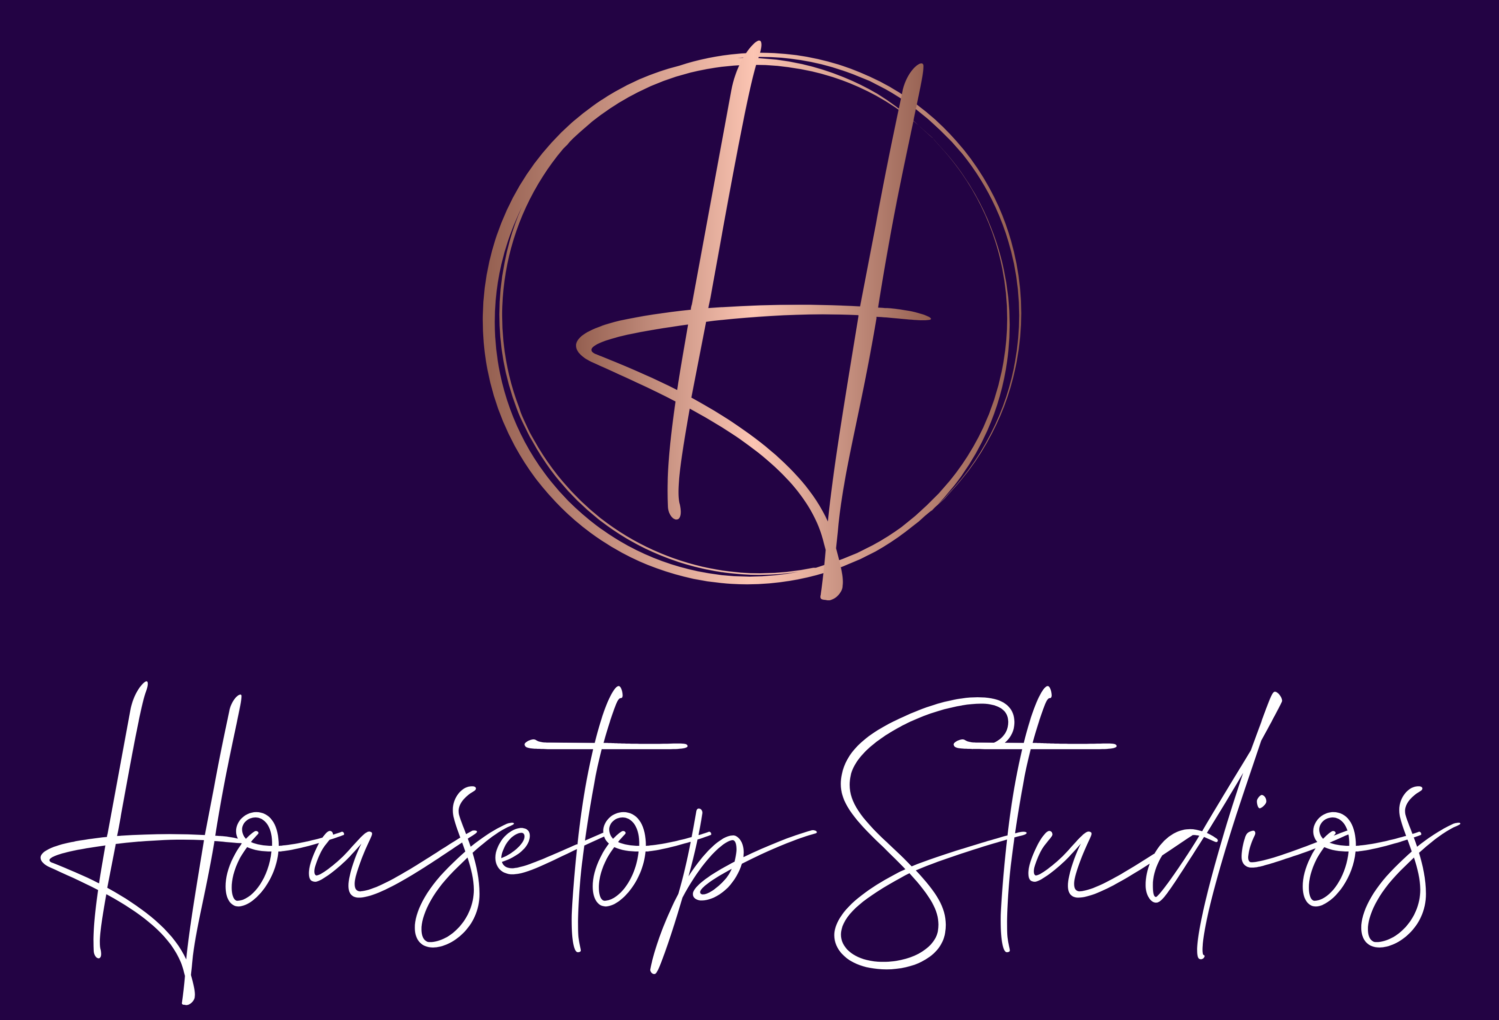 Housetop Studios